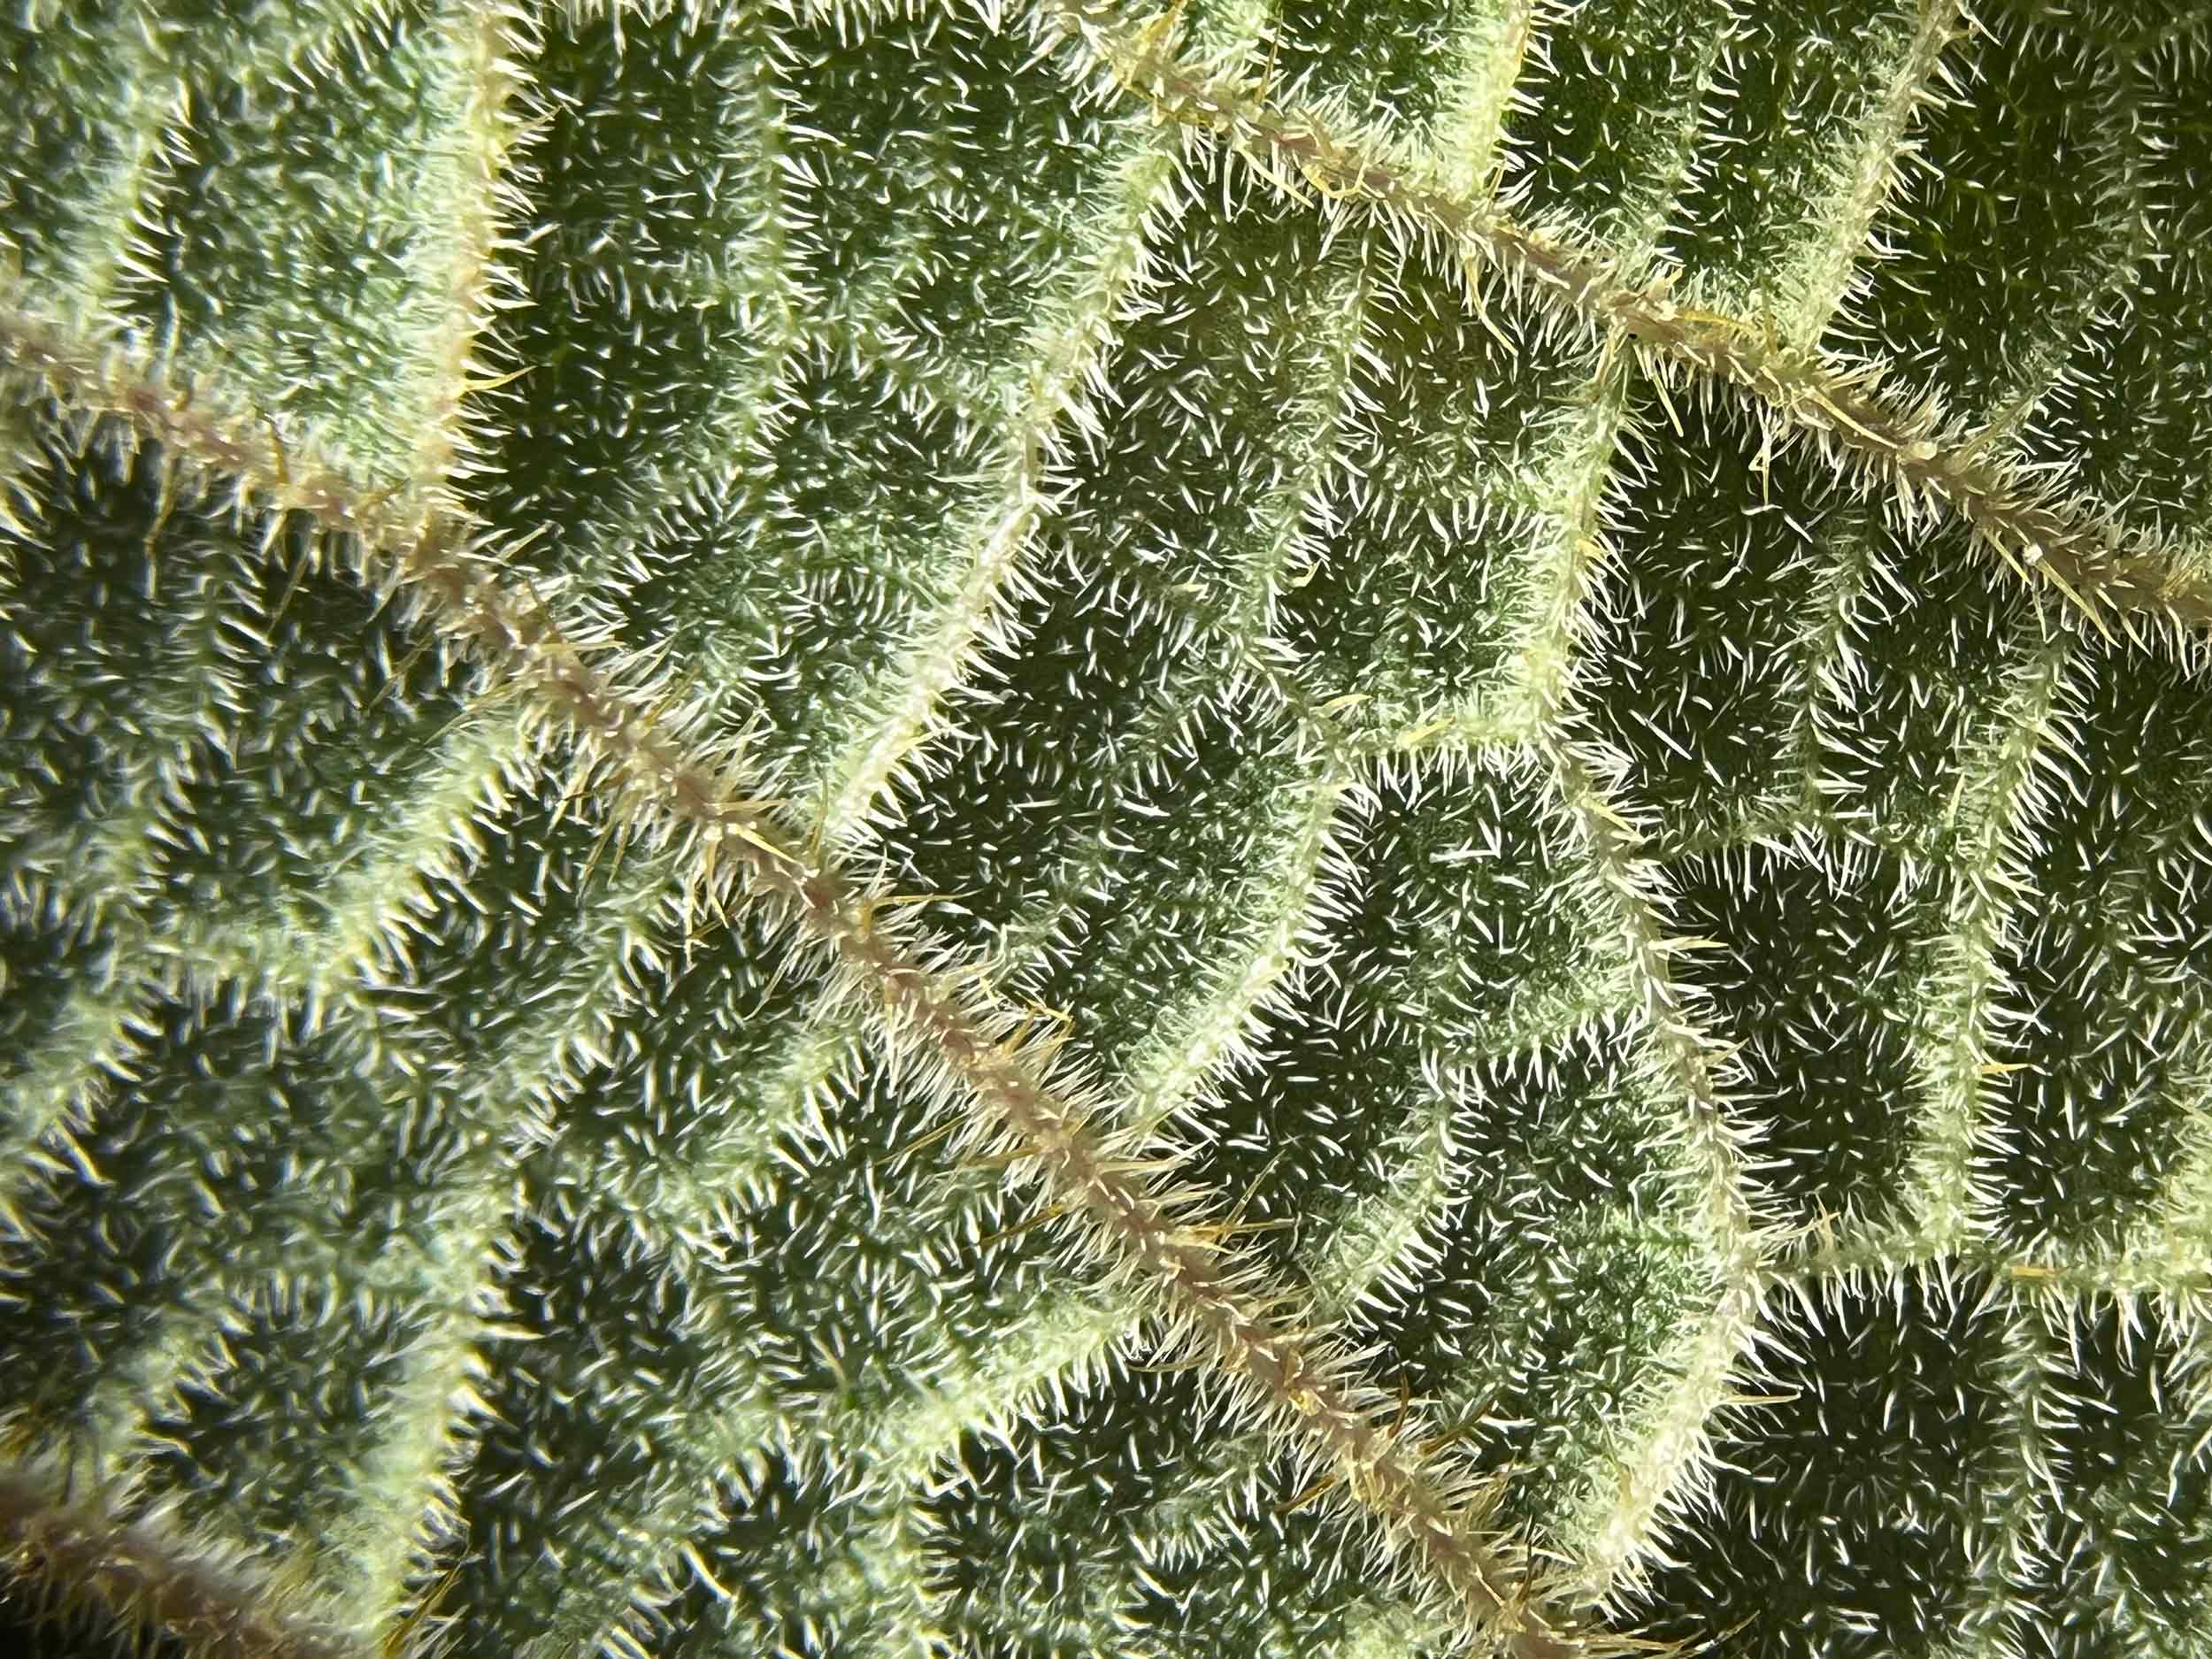 Blattunterseite unter dem Mikroskop